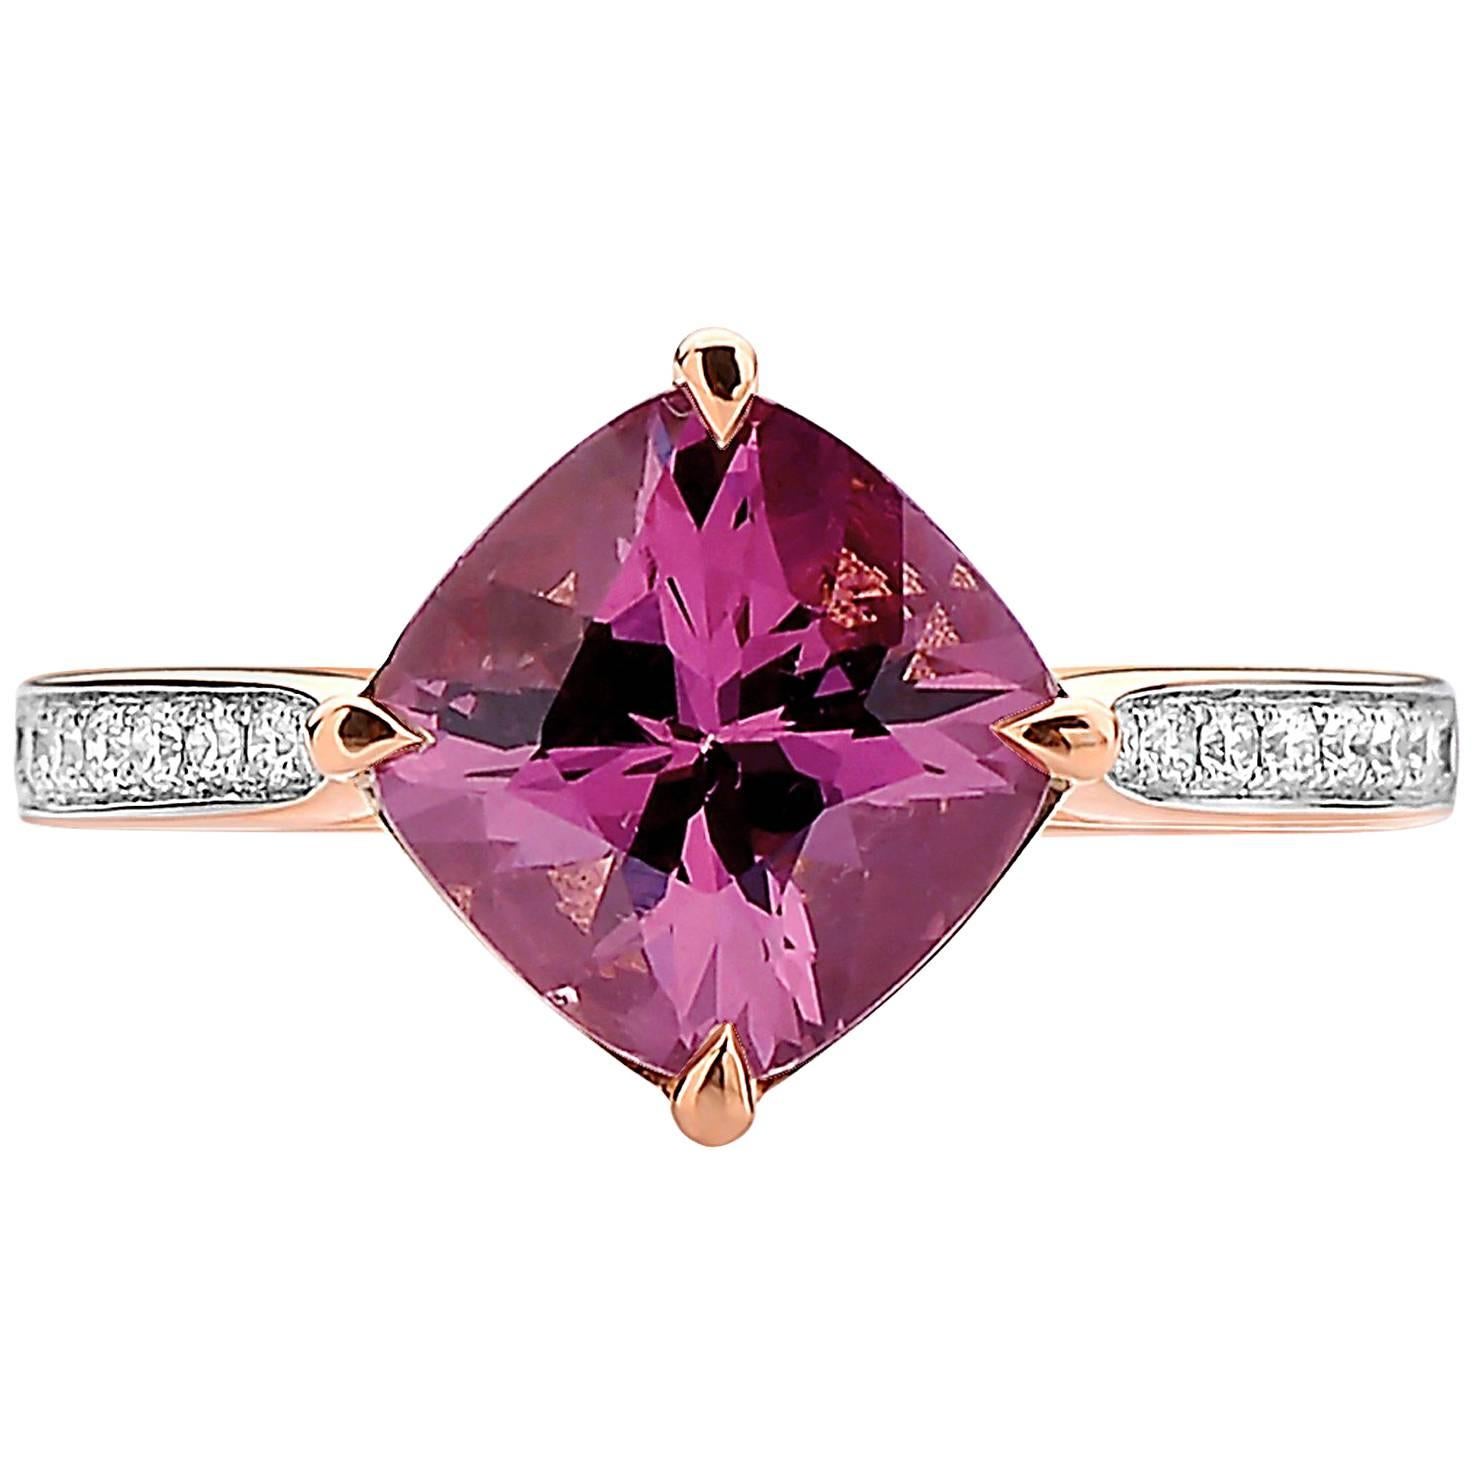 18 Karat Rose Gold Rhodolite Pink Garnet 3.20 Carat and Diamond Ring